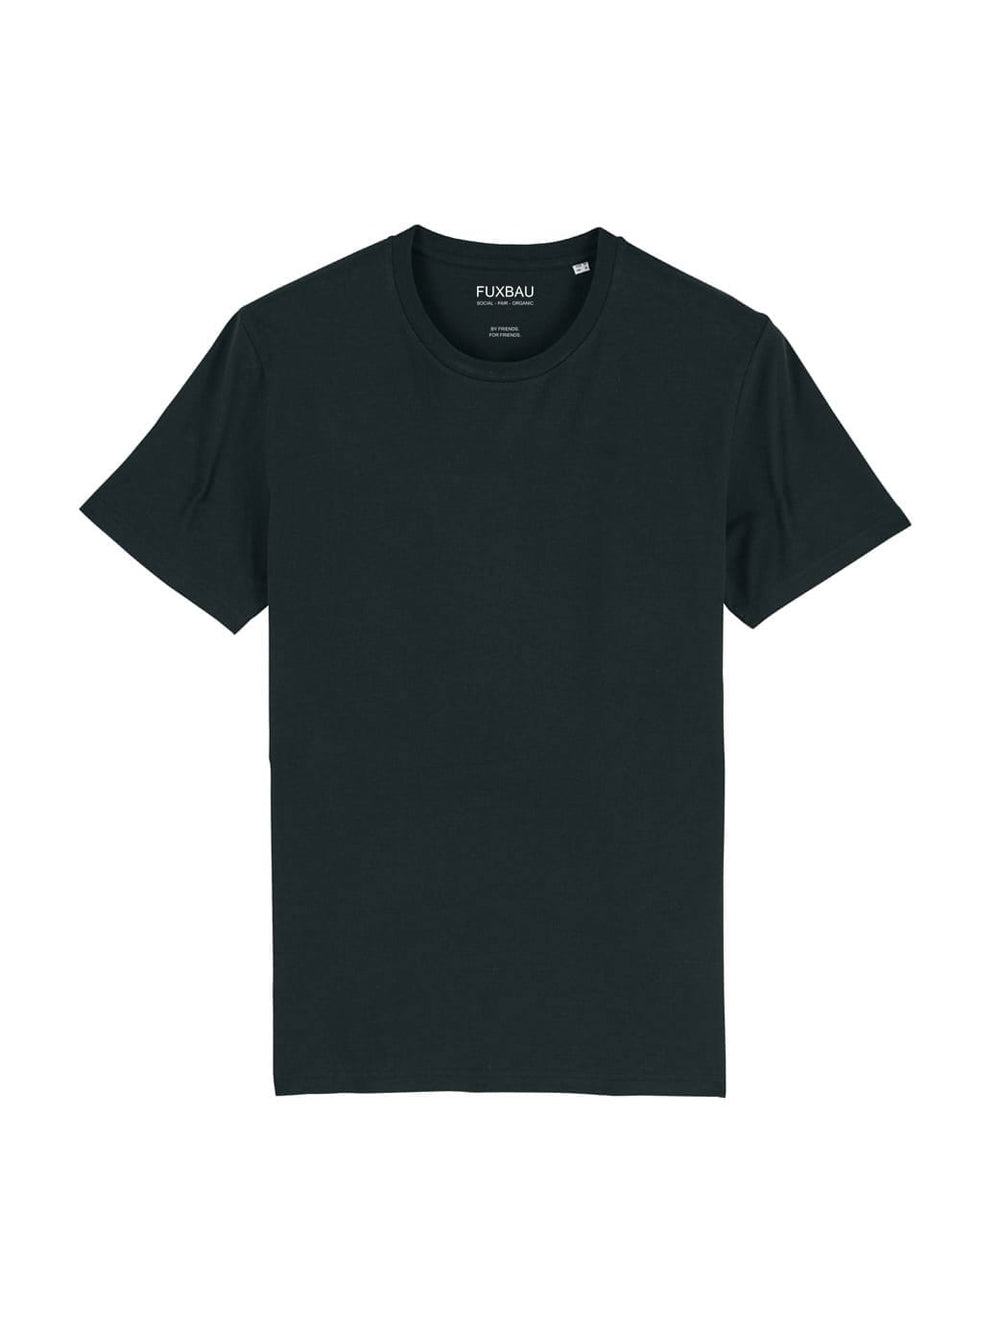 Nachhaltiges Fair Fashion Unisex Standard Basic T-Shirt in schwarz von FUXBAU aus 100% GOTS zertifizierter Biobaumwolle im 3er Pack.